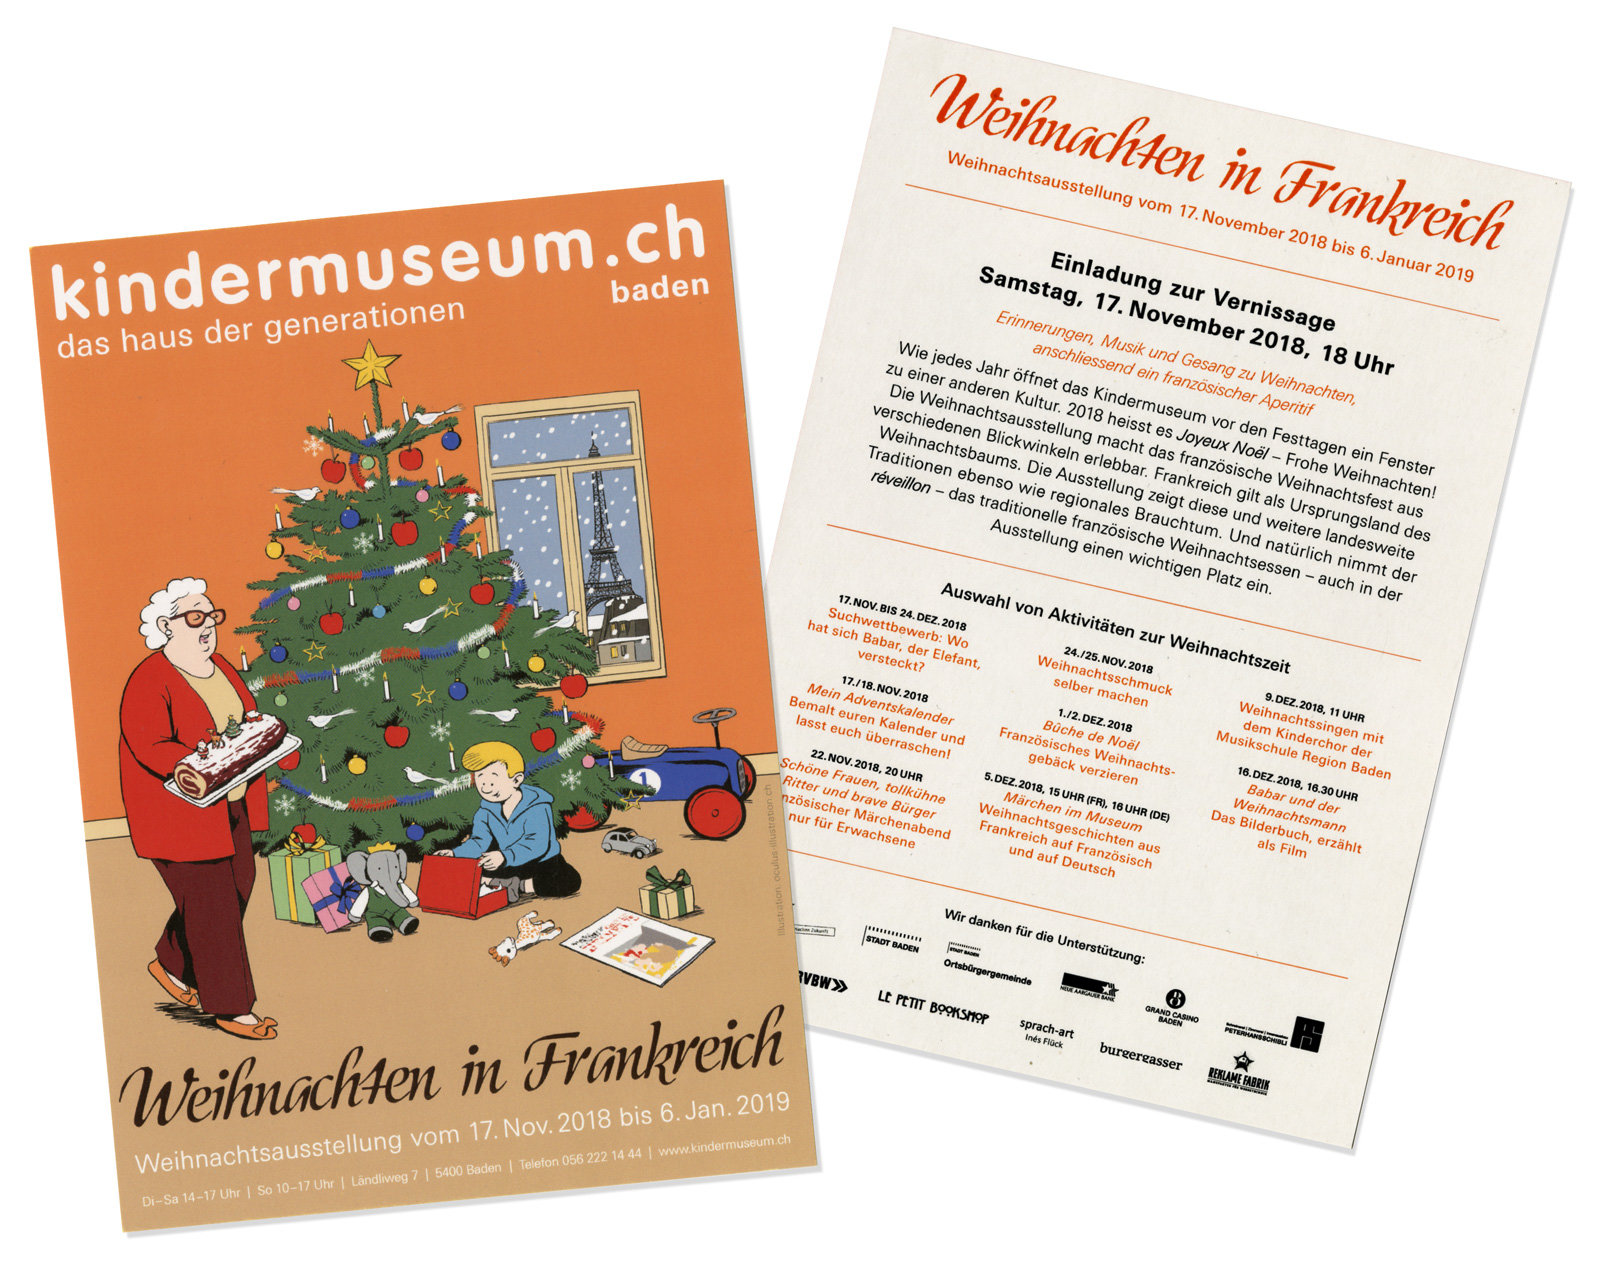 oculus-illustration-kindermuseum-weihnachten-frankreich-comics-flyer